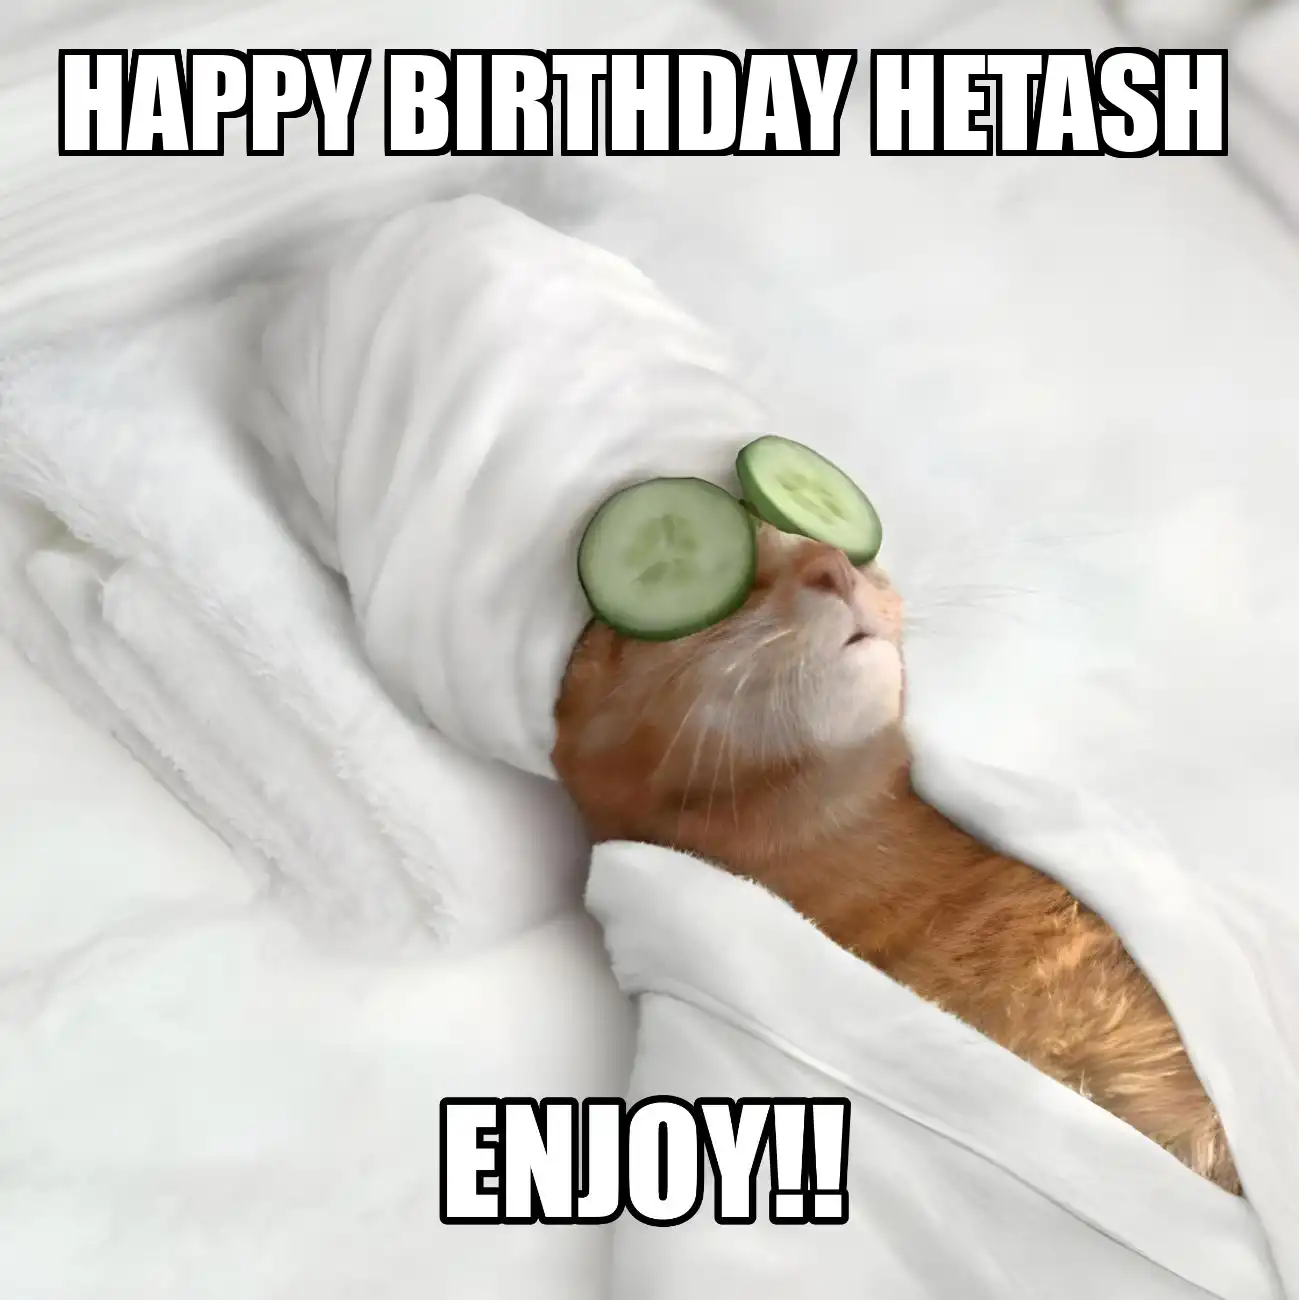 Happy Birthday Hetash Enjoy Cat Meme